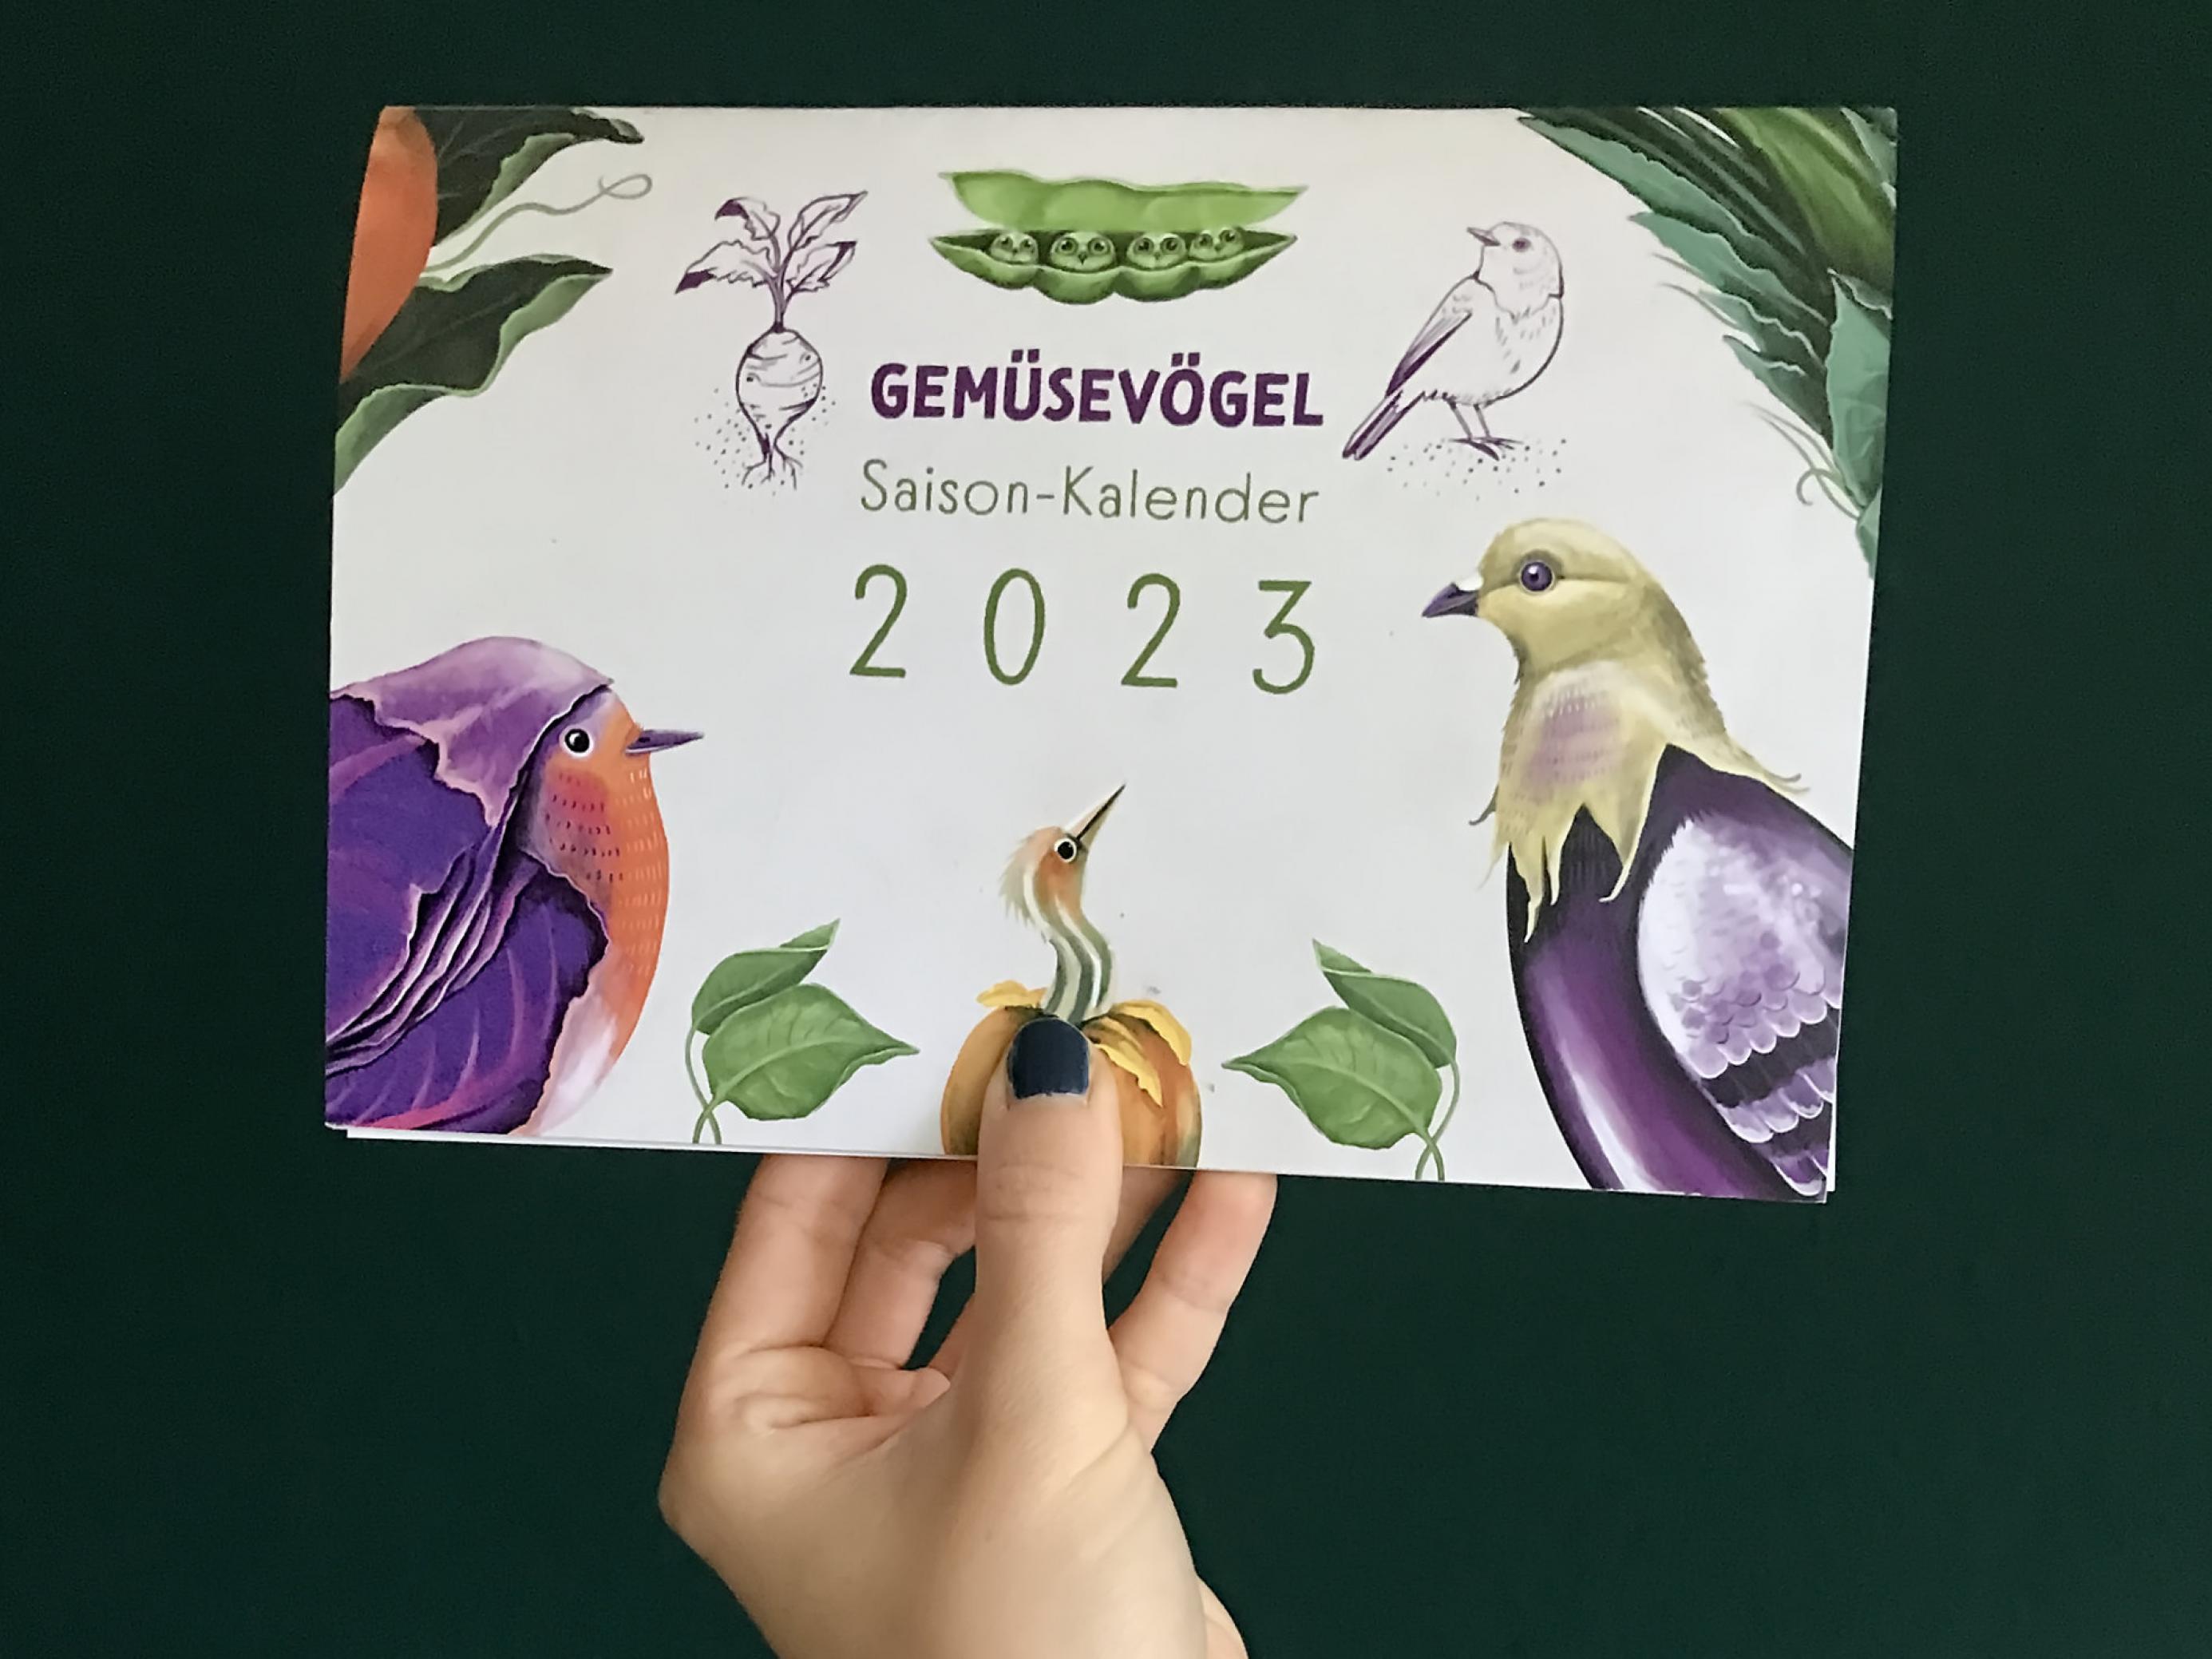 Eine Hand hält einen Kalender im Din A5-Format, auf dem Cover ist unter anderem eine Taube mit grünem Kopf und einem violett-gefärbten Körper zu sehen, eine Taubergine.